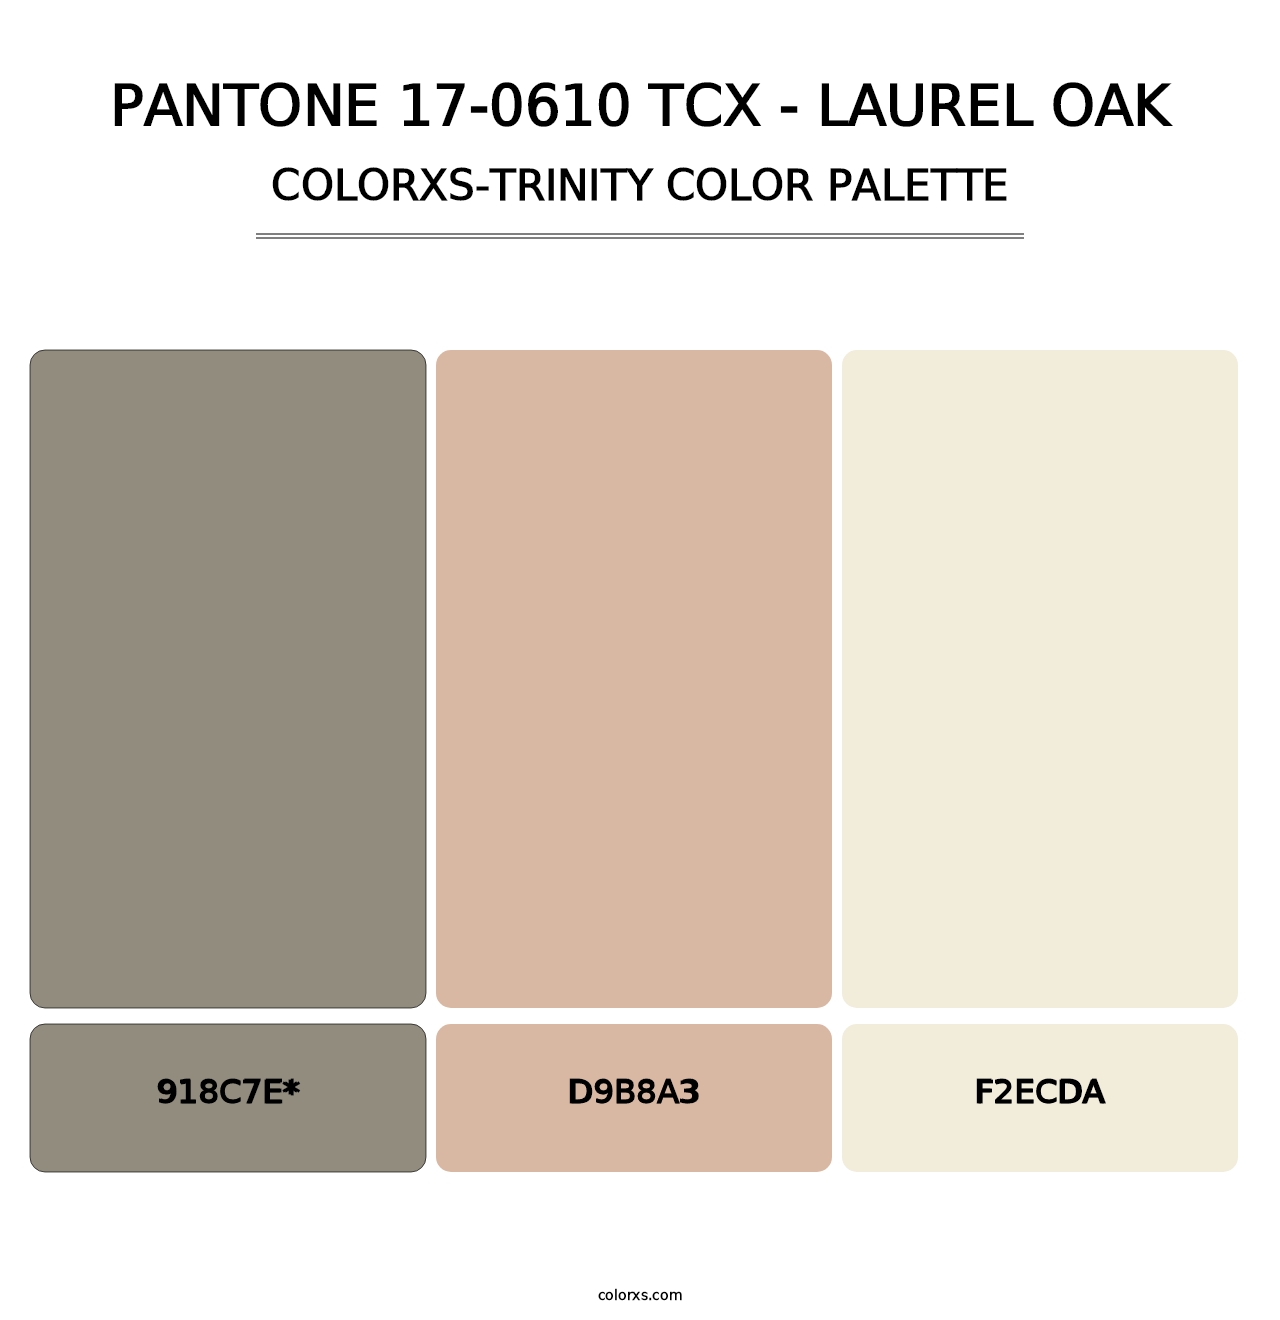 PANTONE 17-0610 TCX - Laurel Oak - Colorxs Trinity Palette